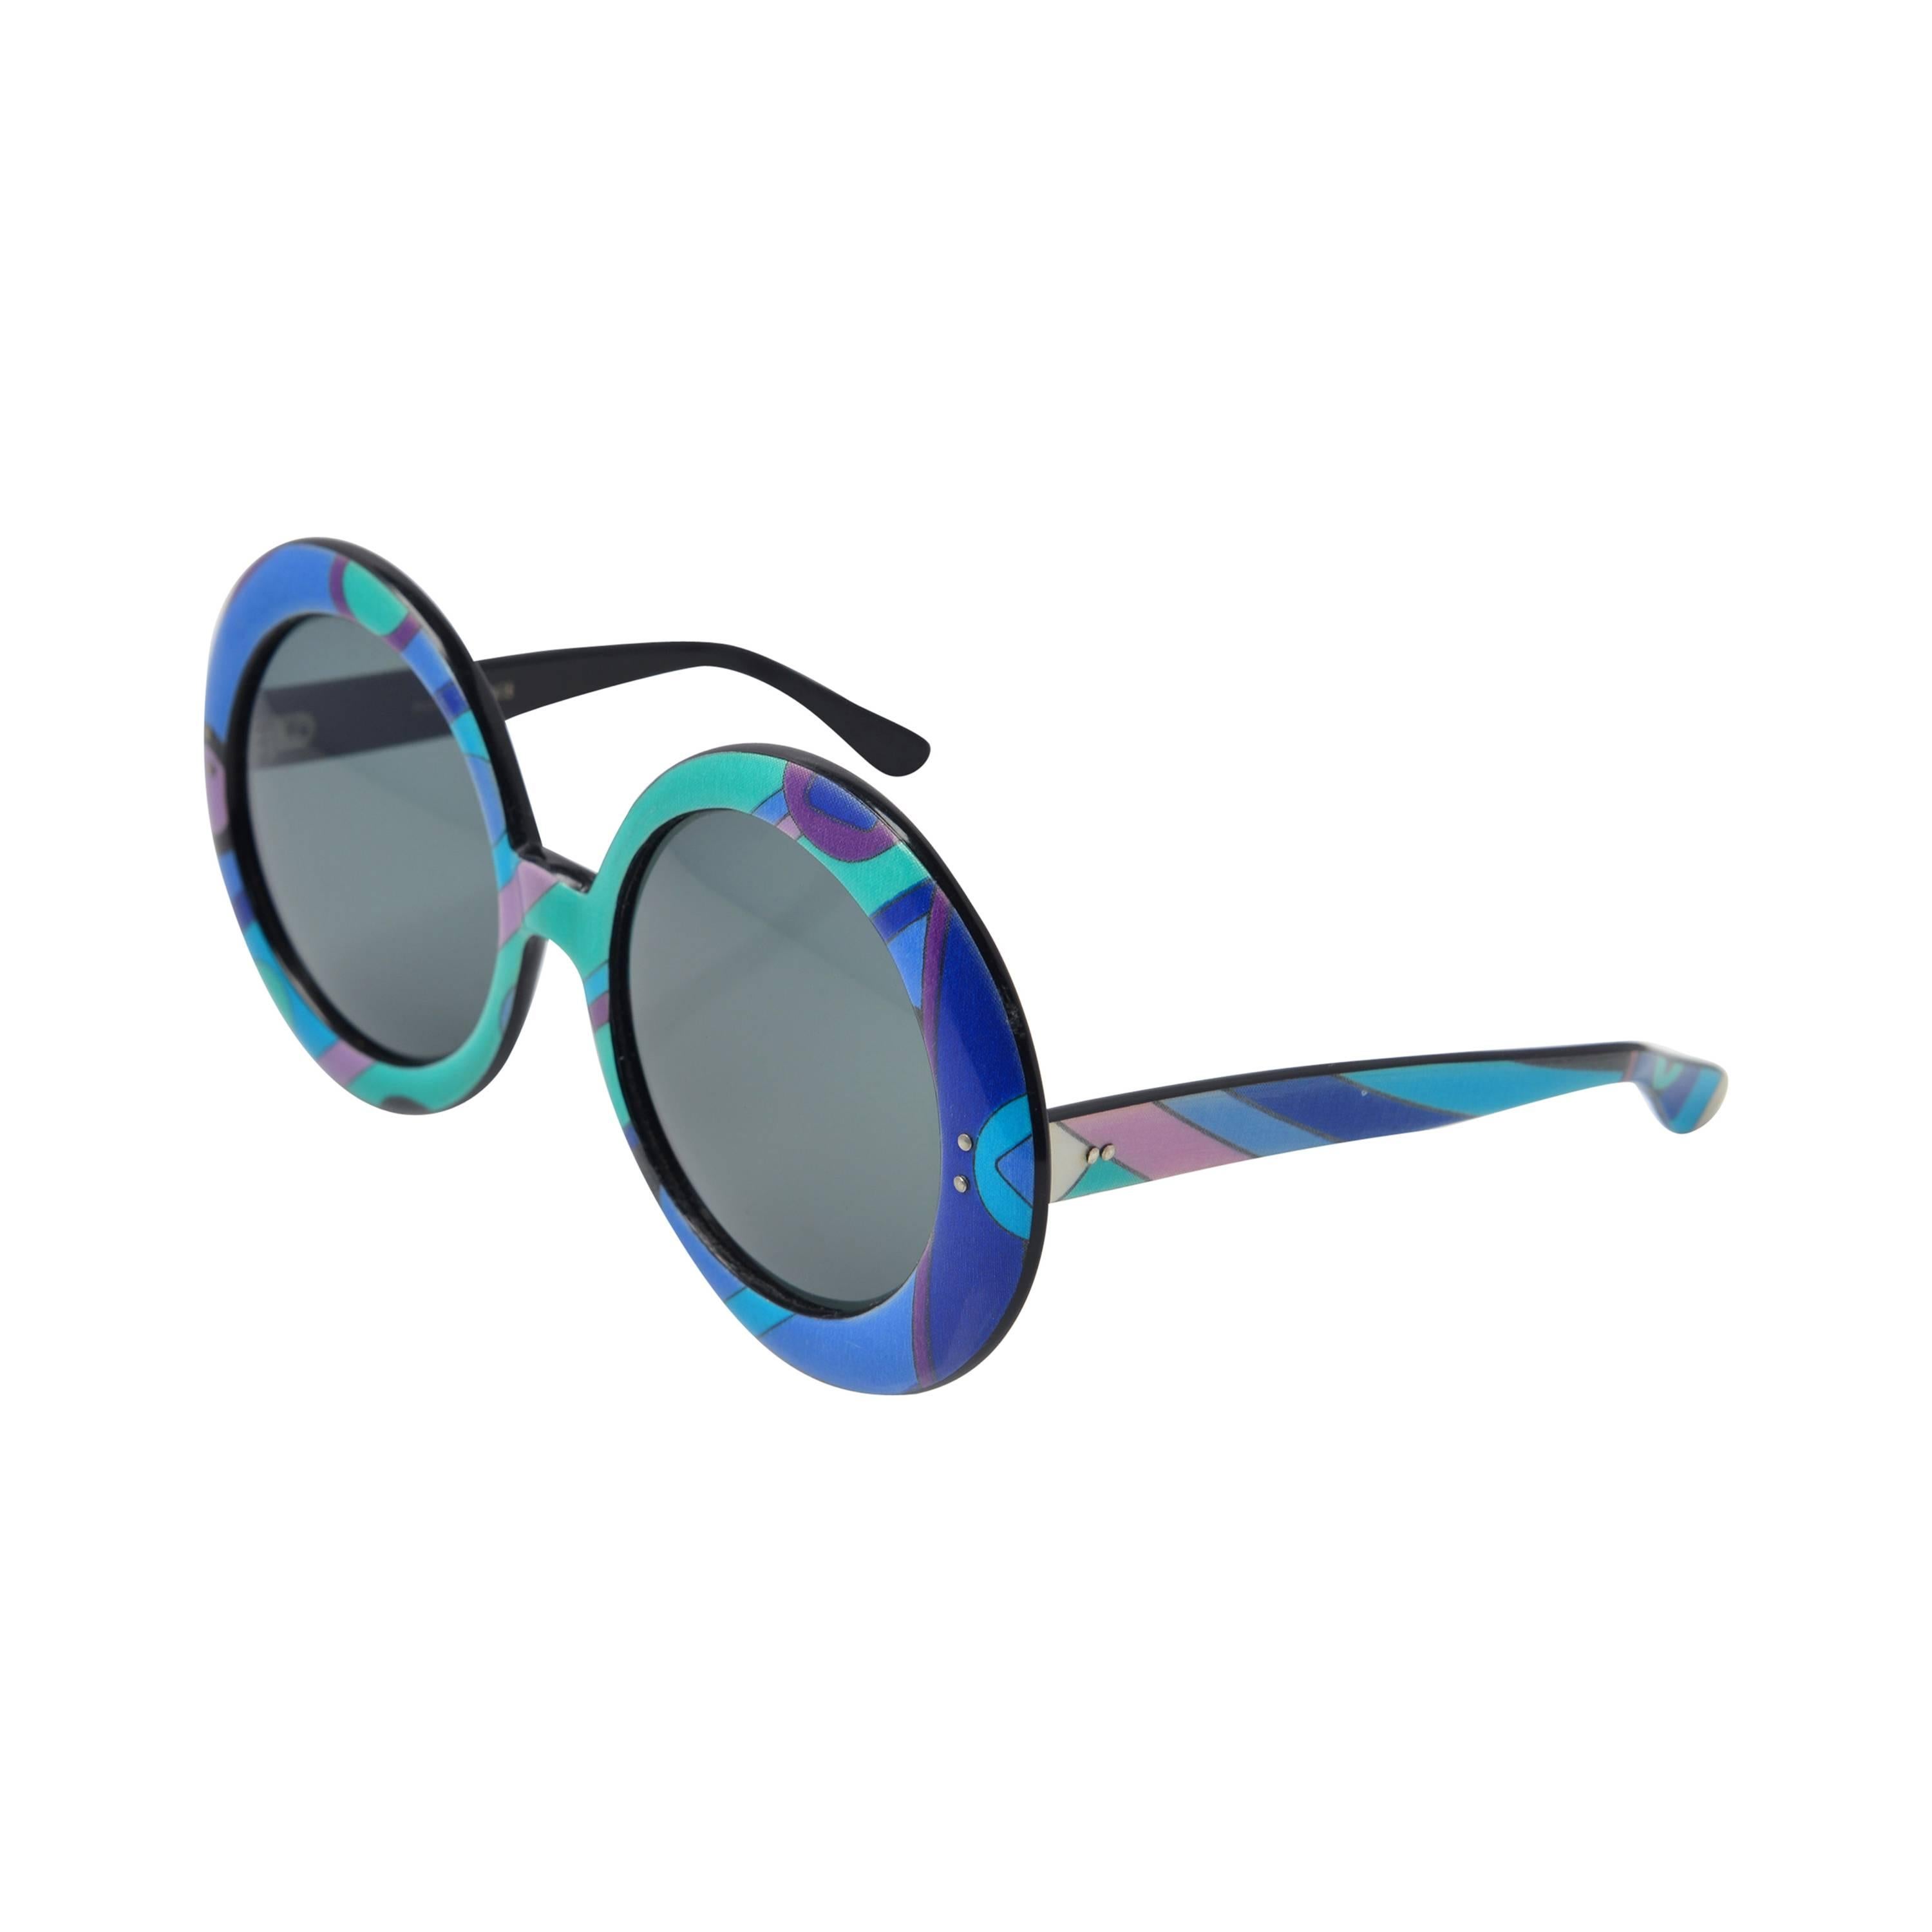 Emilio Pucci Multicolored Mod Round Sunglasses, 1960s 